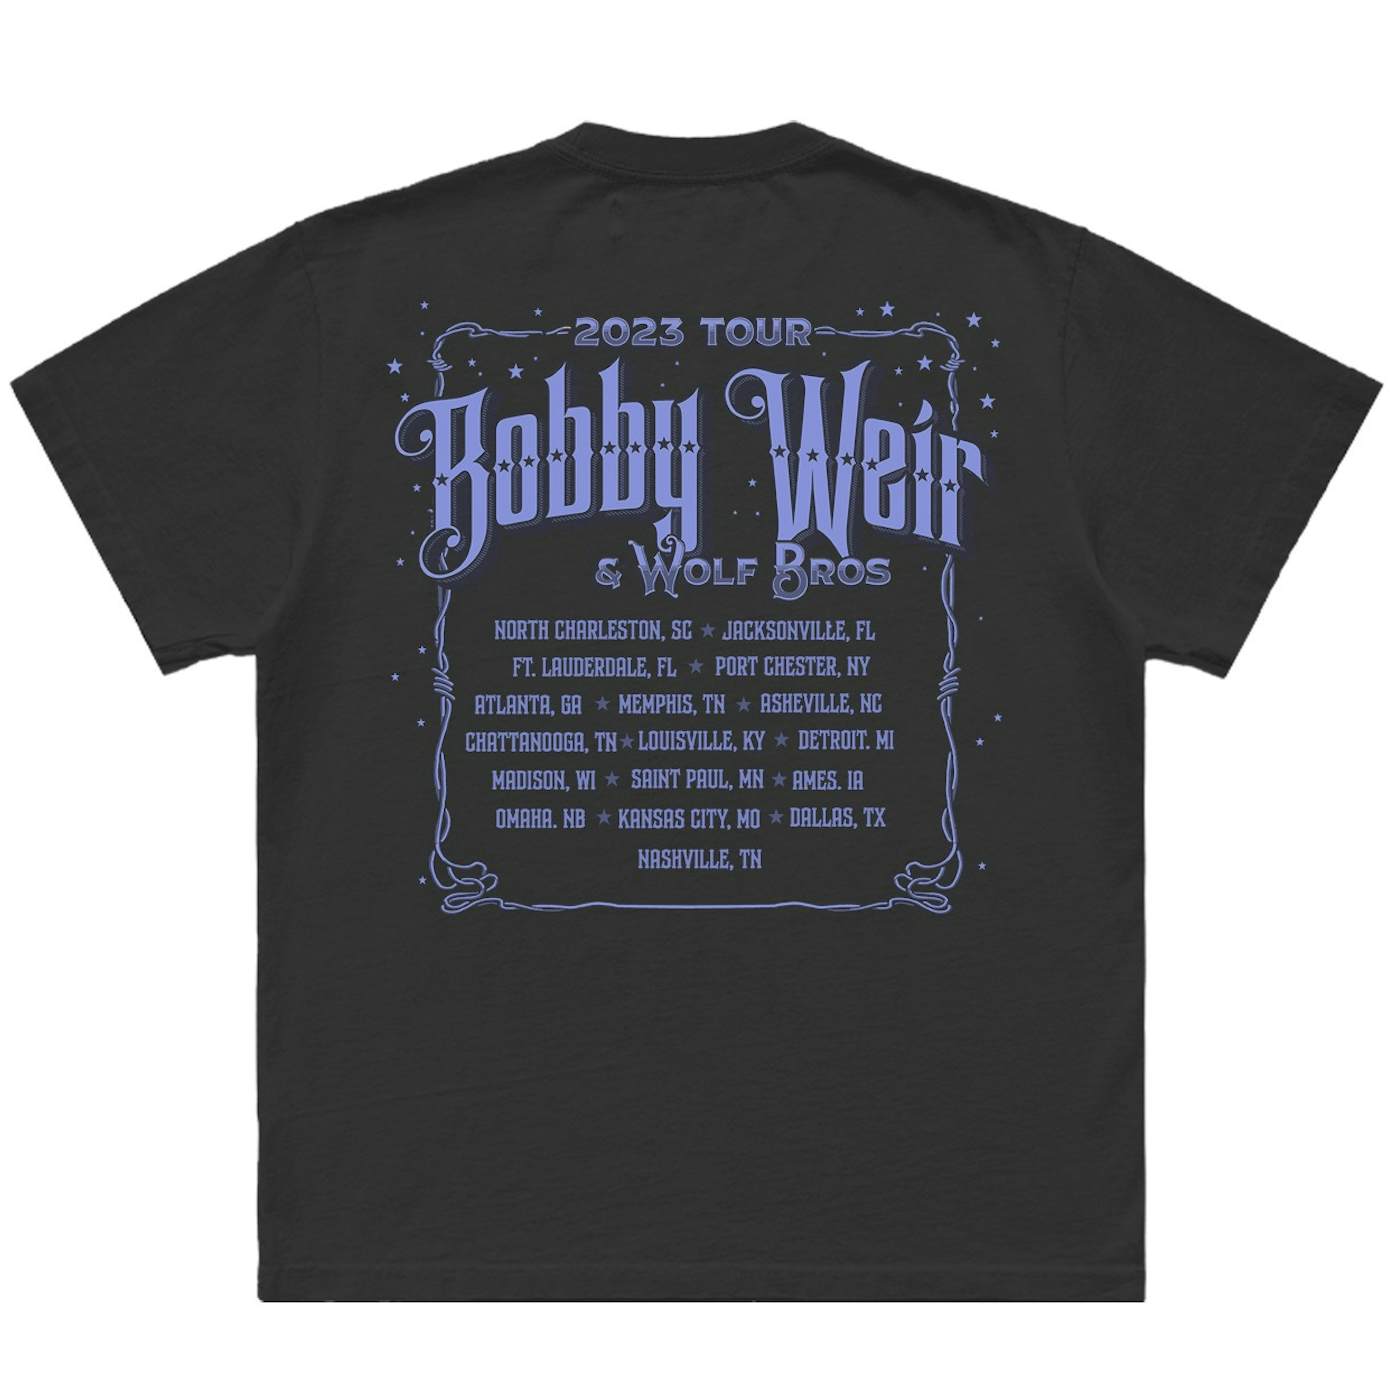 Bob Weir Bobby Weir & Wolf Bros 2023 Tour Event Tee